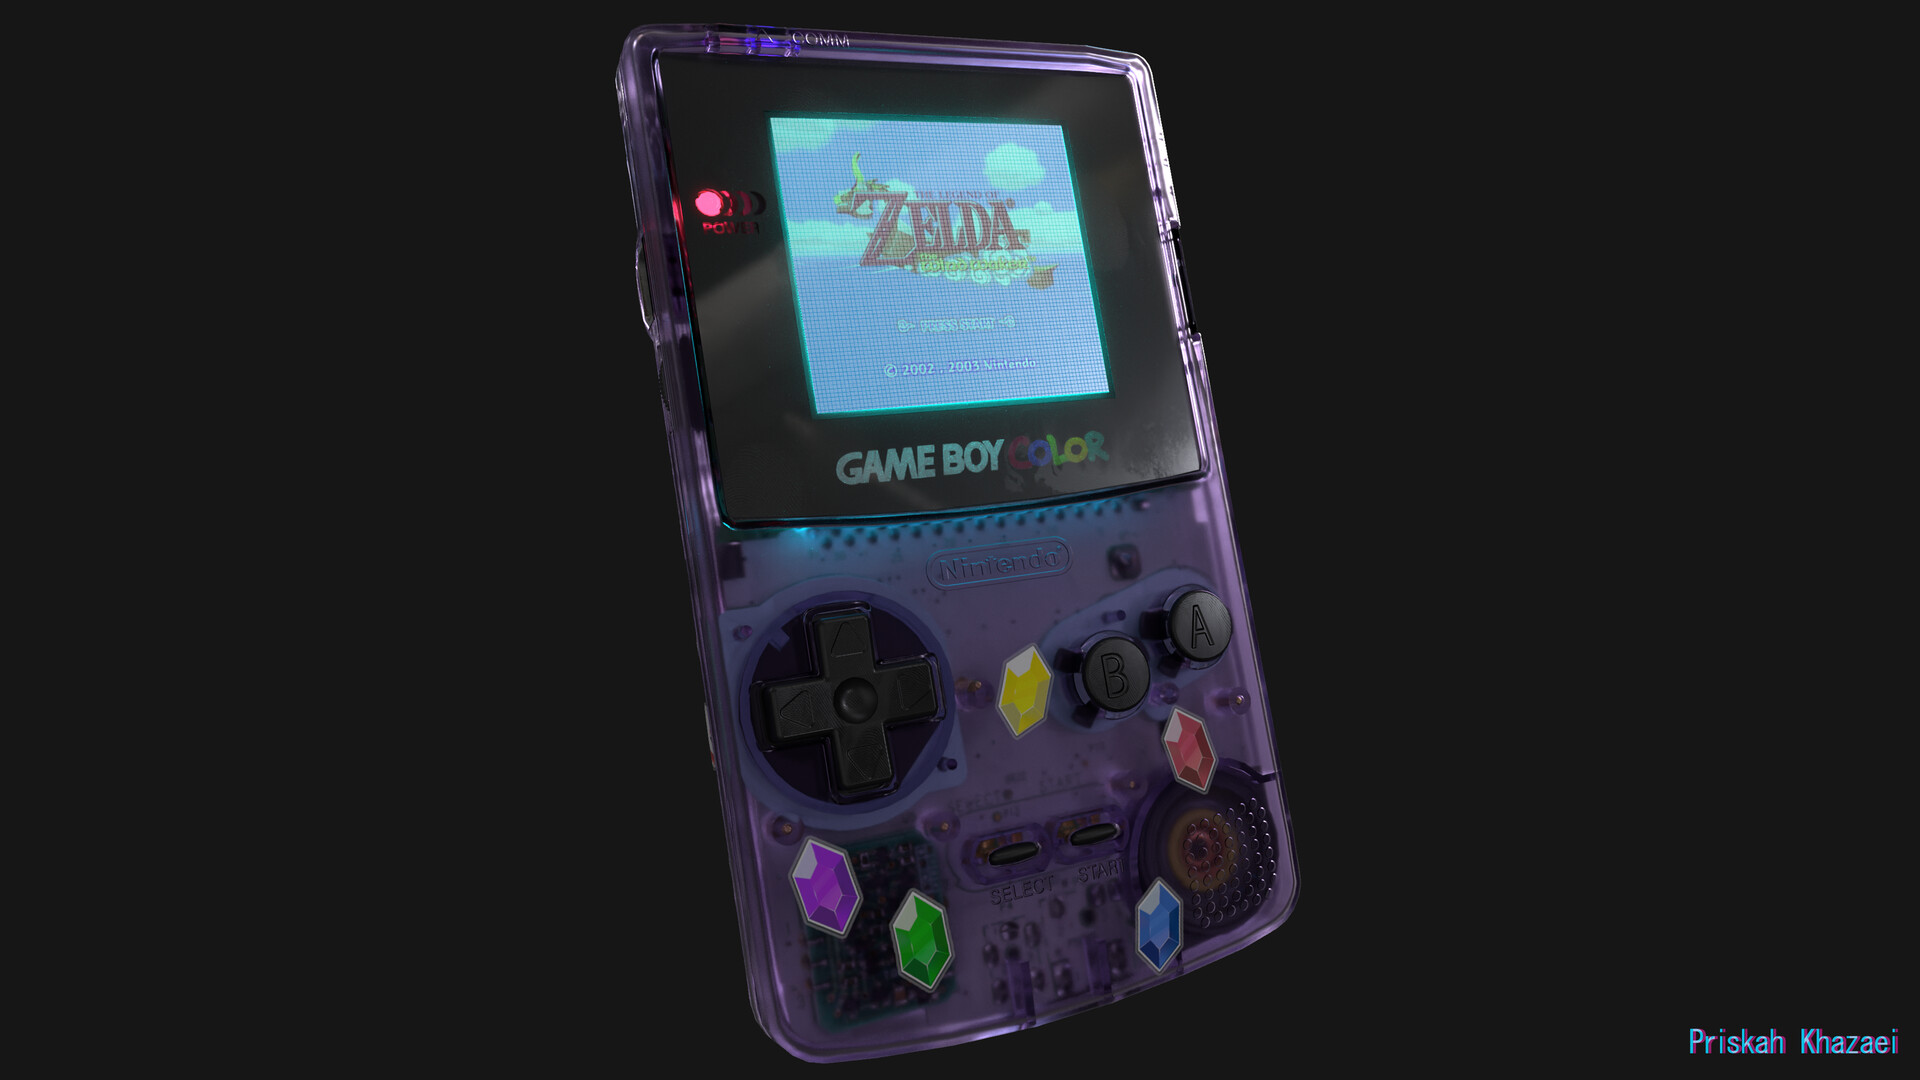 Trò chơi Zelda Game Boy Color là một trải nghiệm tuyệt vời với những câu đố và đấu trường gay cấn. Nếu bạn là một fan của trò chơi phiêu lưu, hãy xem những hình ảnh liên quan và tìm hiểu thêm về thế giới đầy kỳ quặc của Zelda trên Game Boy Color.